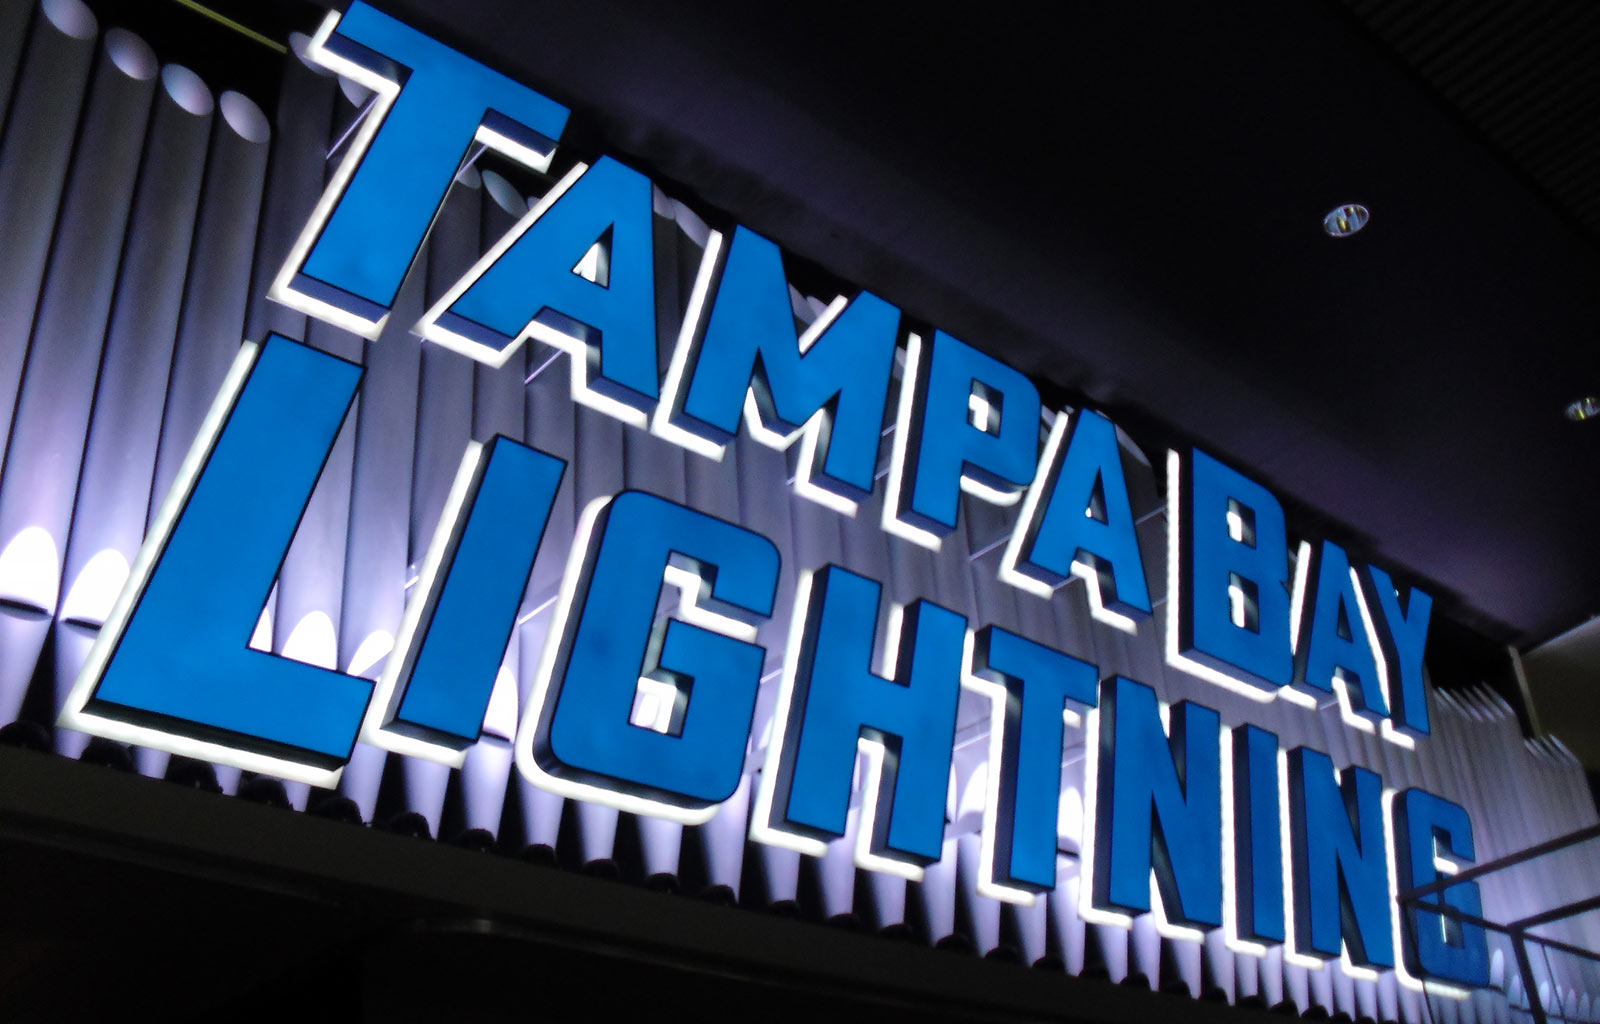 Tampa Bay Lightning Organ Signage